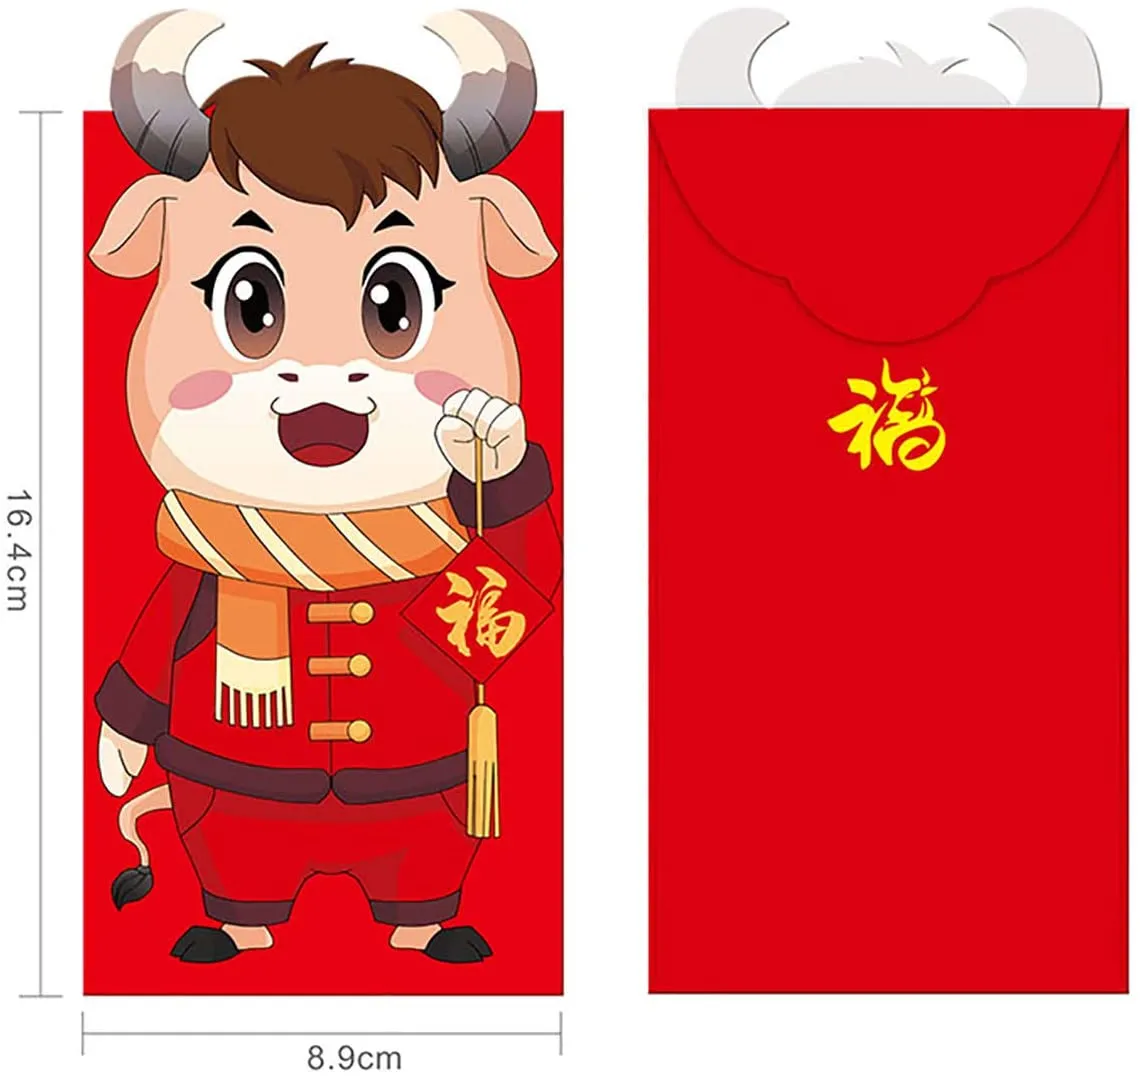 Китайский Новый год Красные Конверты 2021 Китайский Красный Пакеты Подарок Деньги Конверты Рождественский Весенний Фестиваль DHL DHL